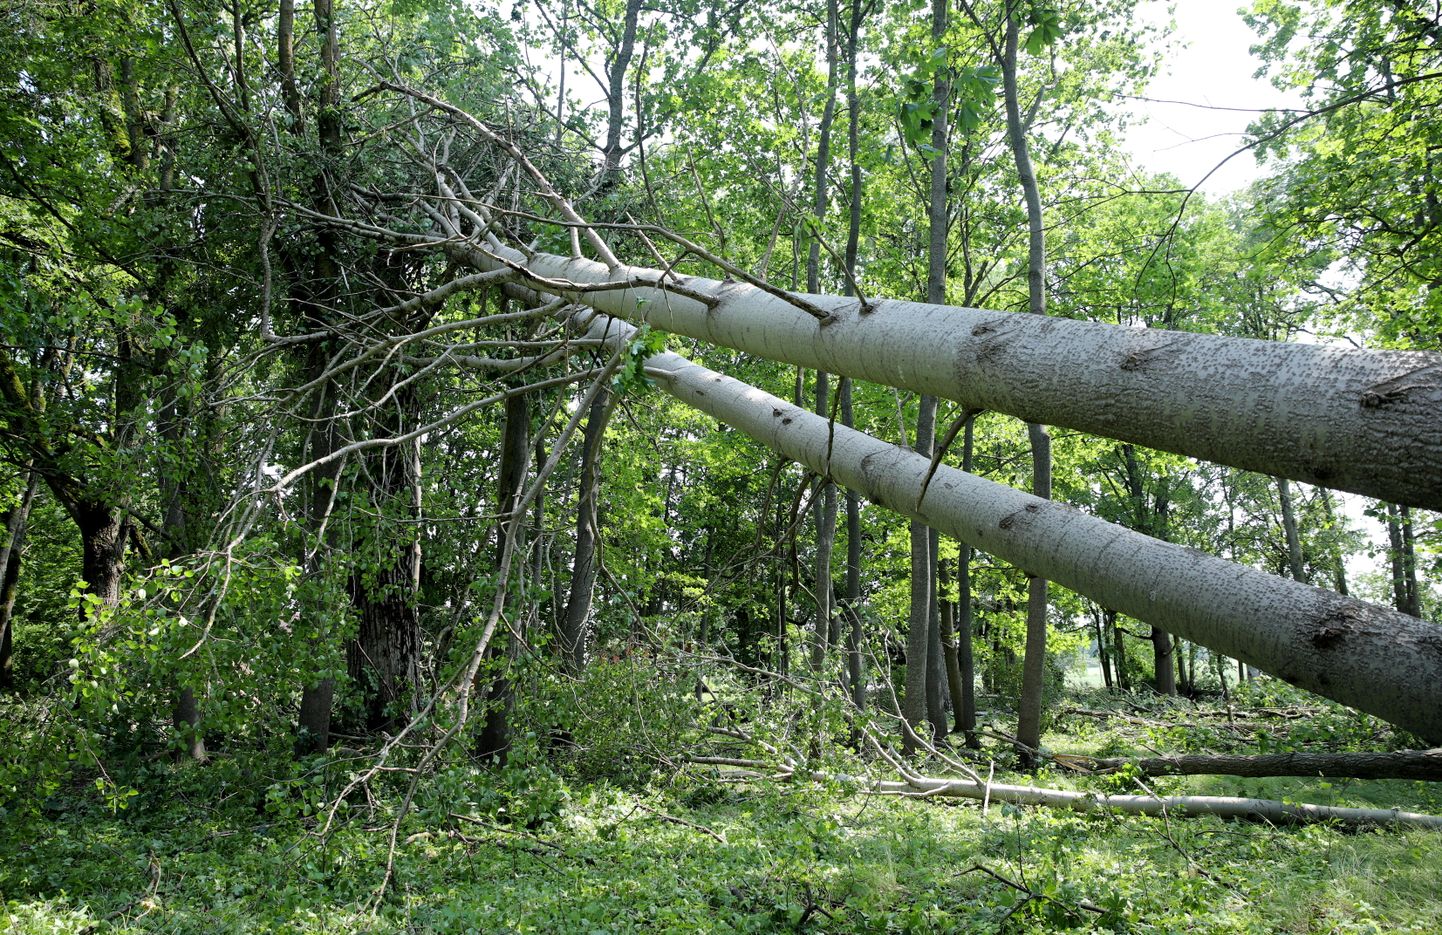 Vēja nogāzti koki Abavnieku parkā Jaunsātu pagastā, kur otrdienas vakarā plosījās vētra.